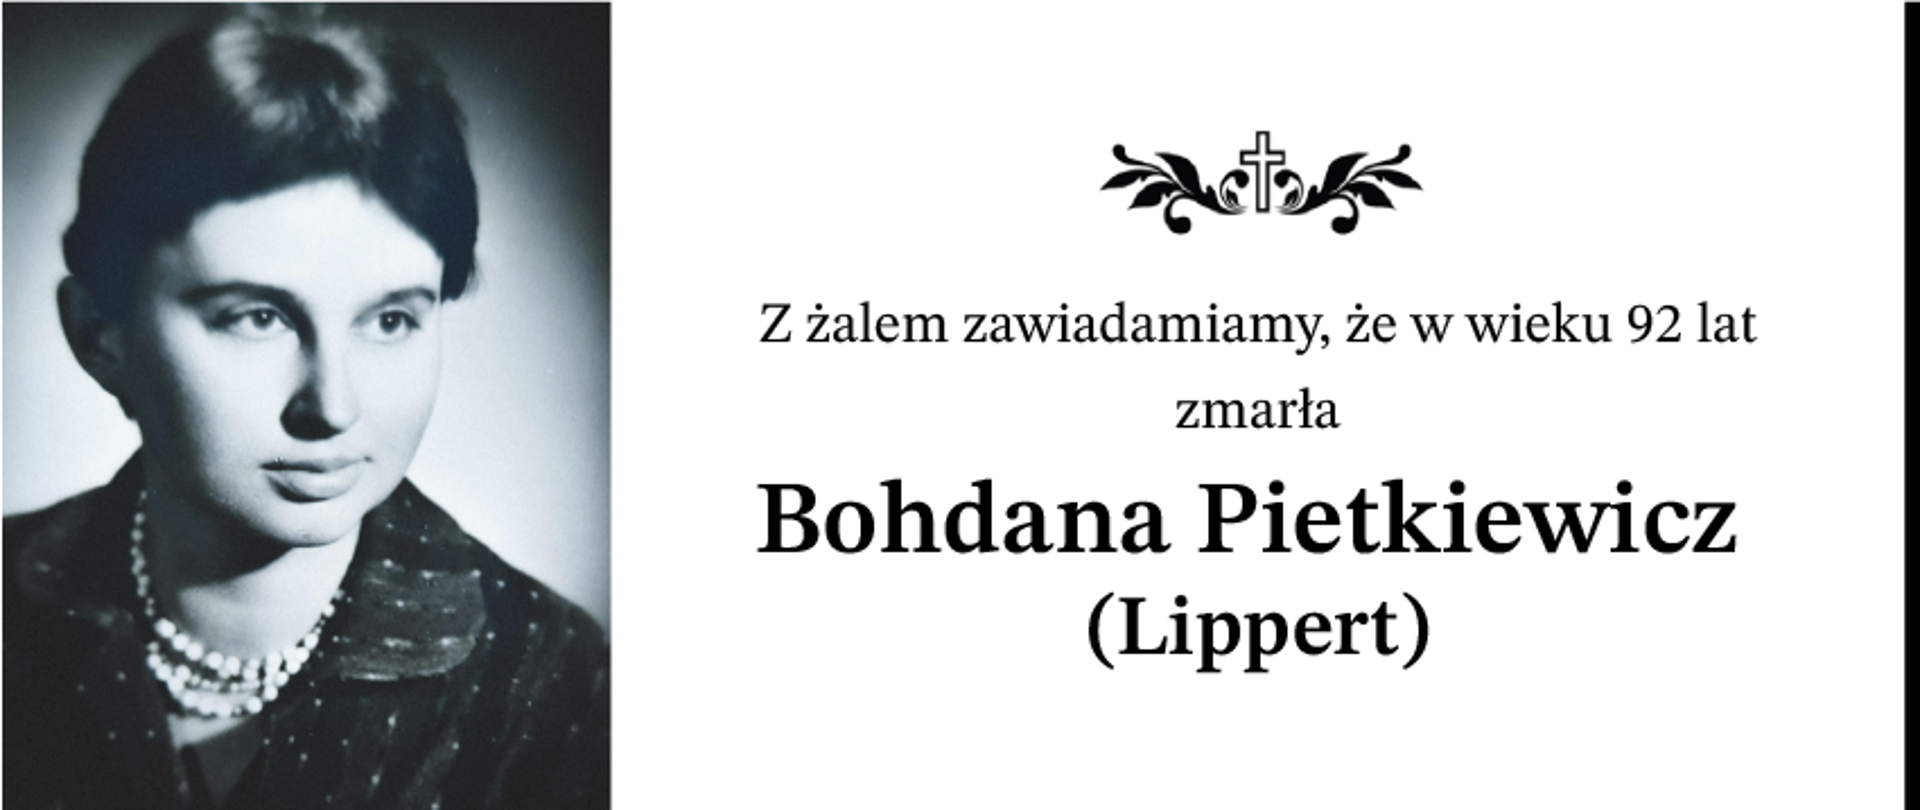 Bohdana Pietkiewicz